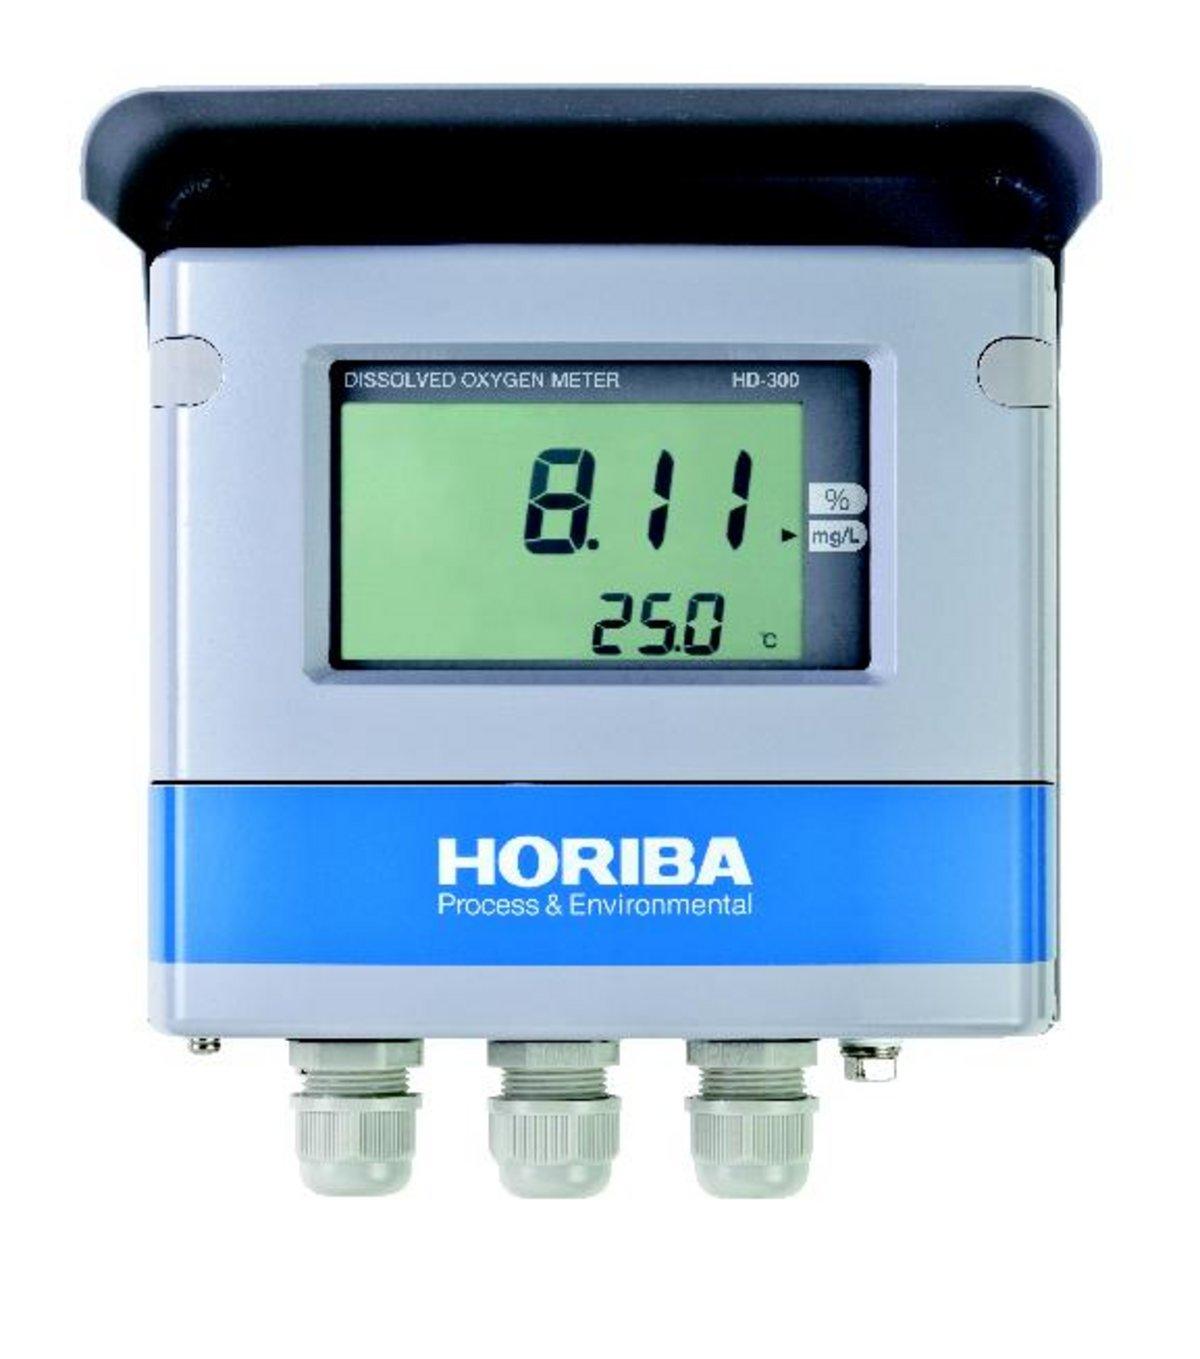 堀場製作所(HORIBA) ポータブル型pHメータ D-73T 本体のみ 研究、開発用